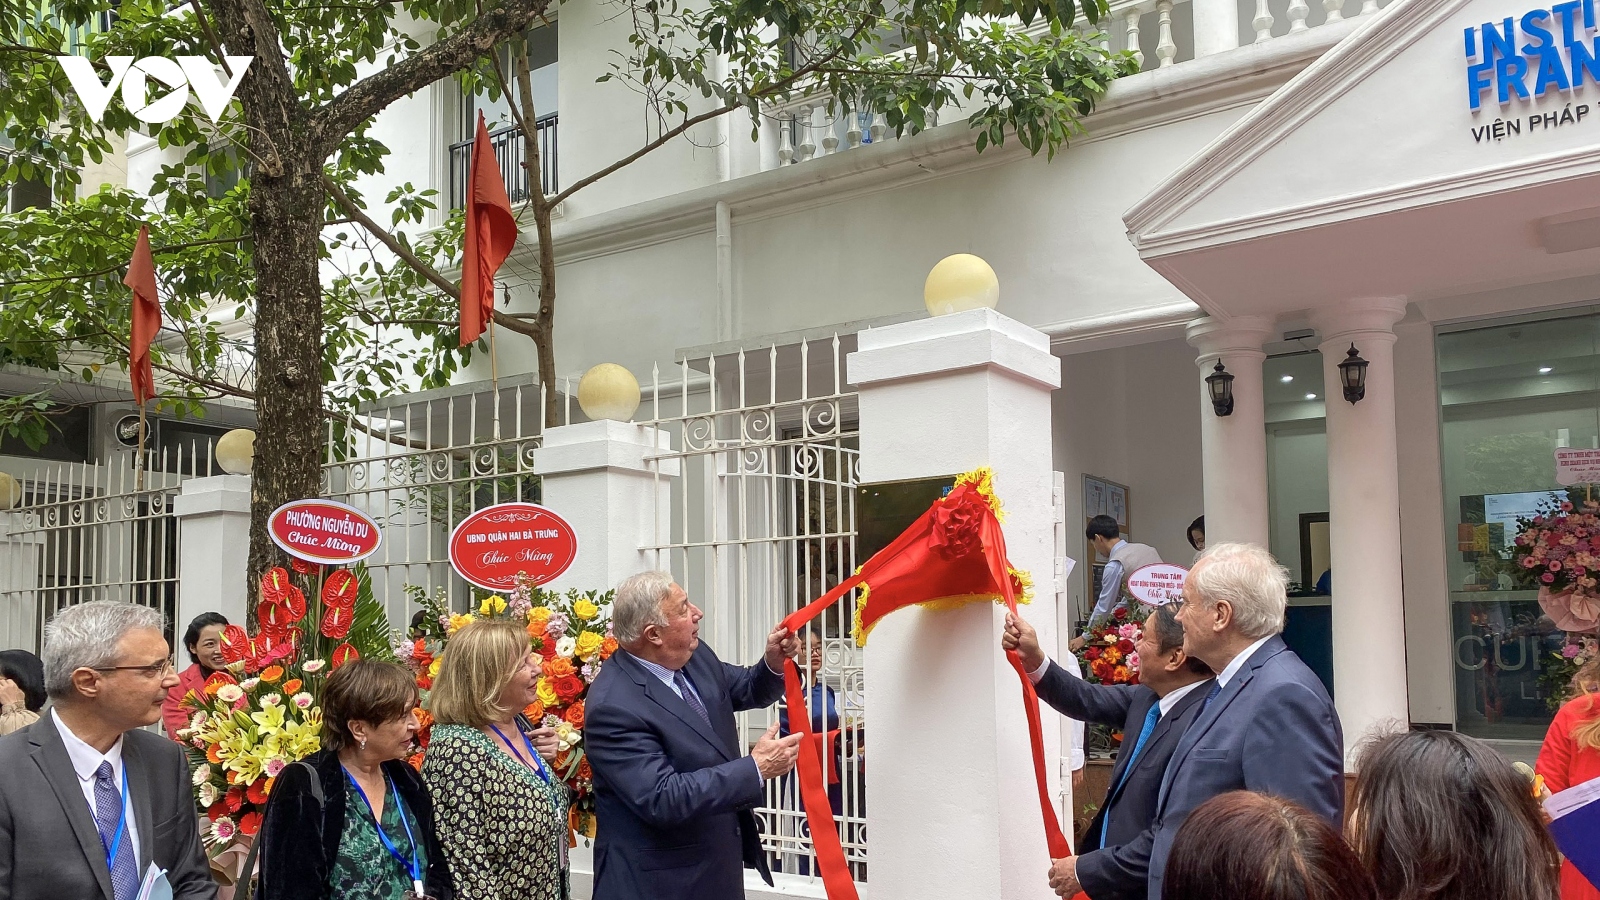 Viện Pháp tại Hà Nội khánh thành trụ sở mới